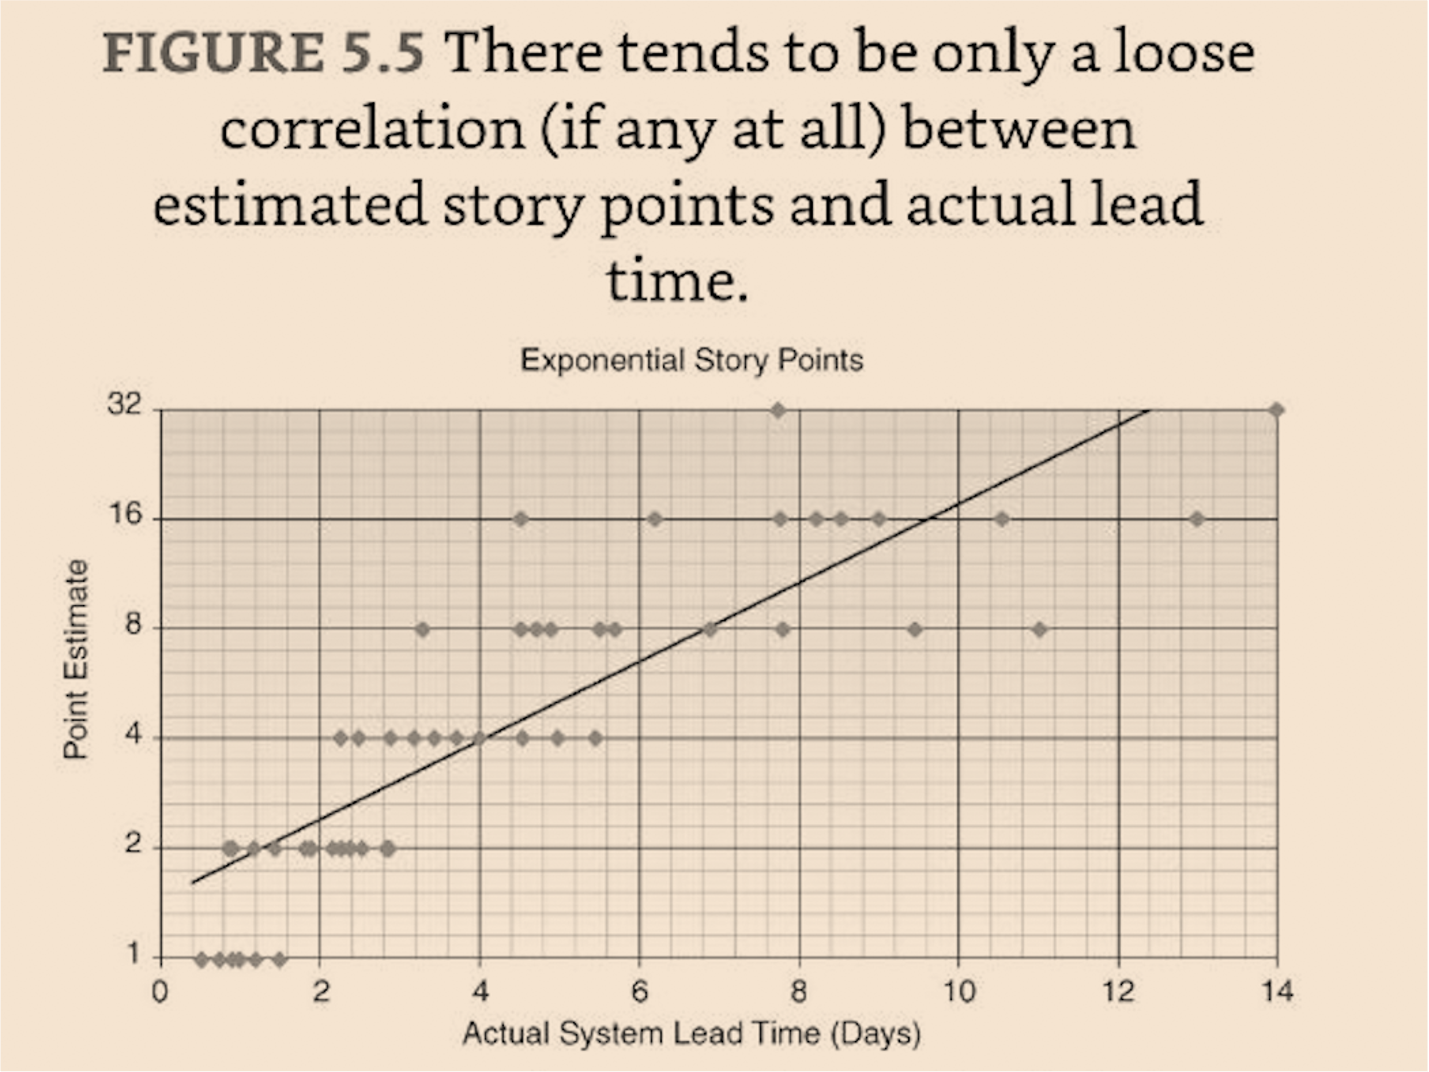 Показана слабая линейная корреляция между Story Points и временем решения задач с увеличением дисперсии при большей оценке